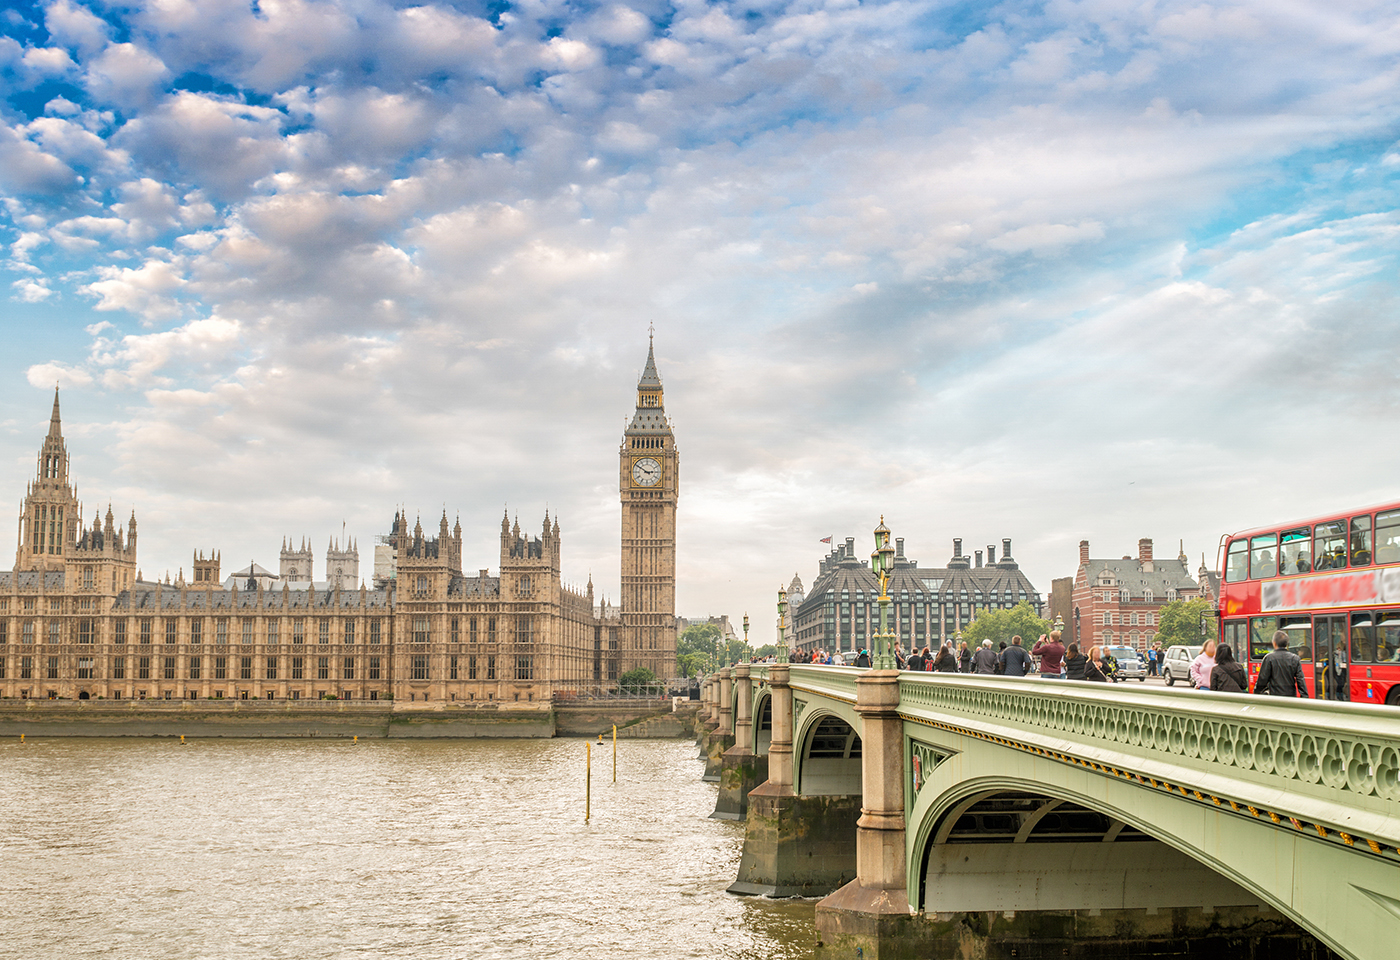 Parlamento de Londres y Big Ben